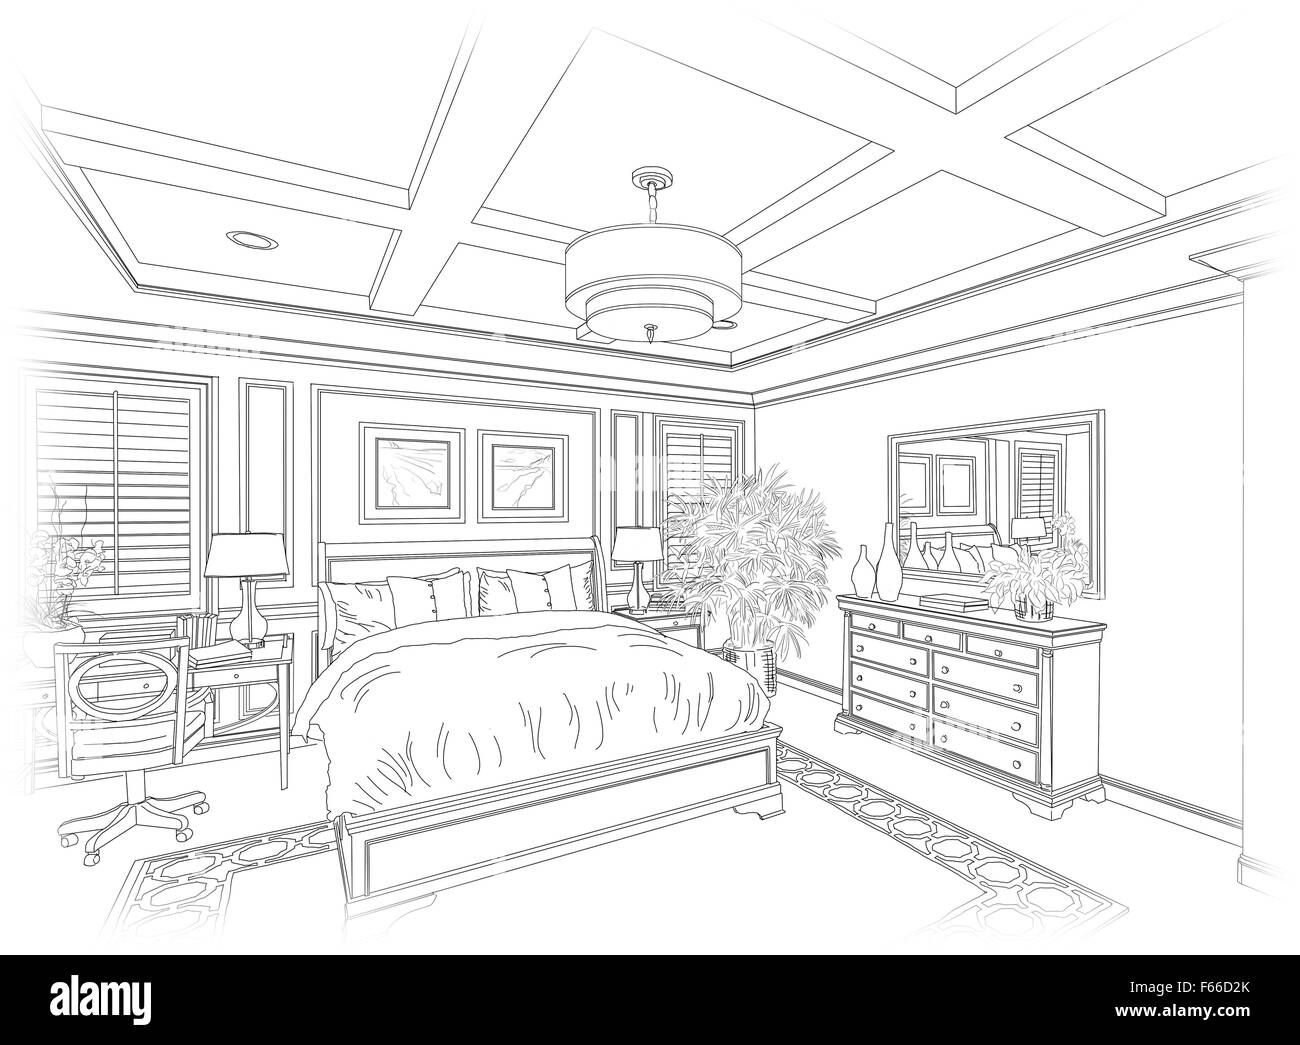 Detaillierte Zeichnung von einem schönen Schlafzimmer. Stockfoto